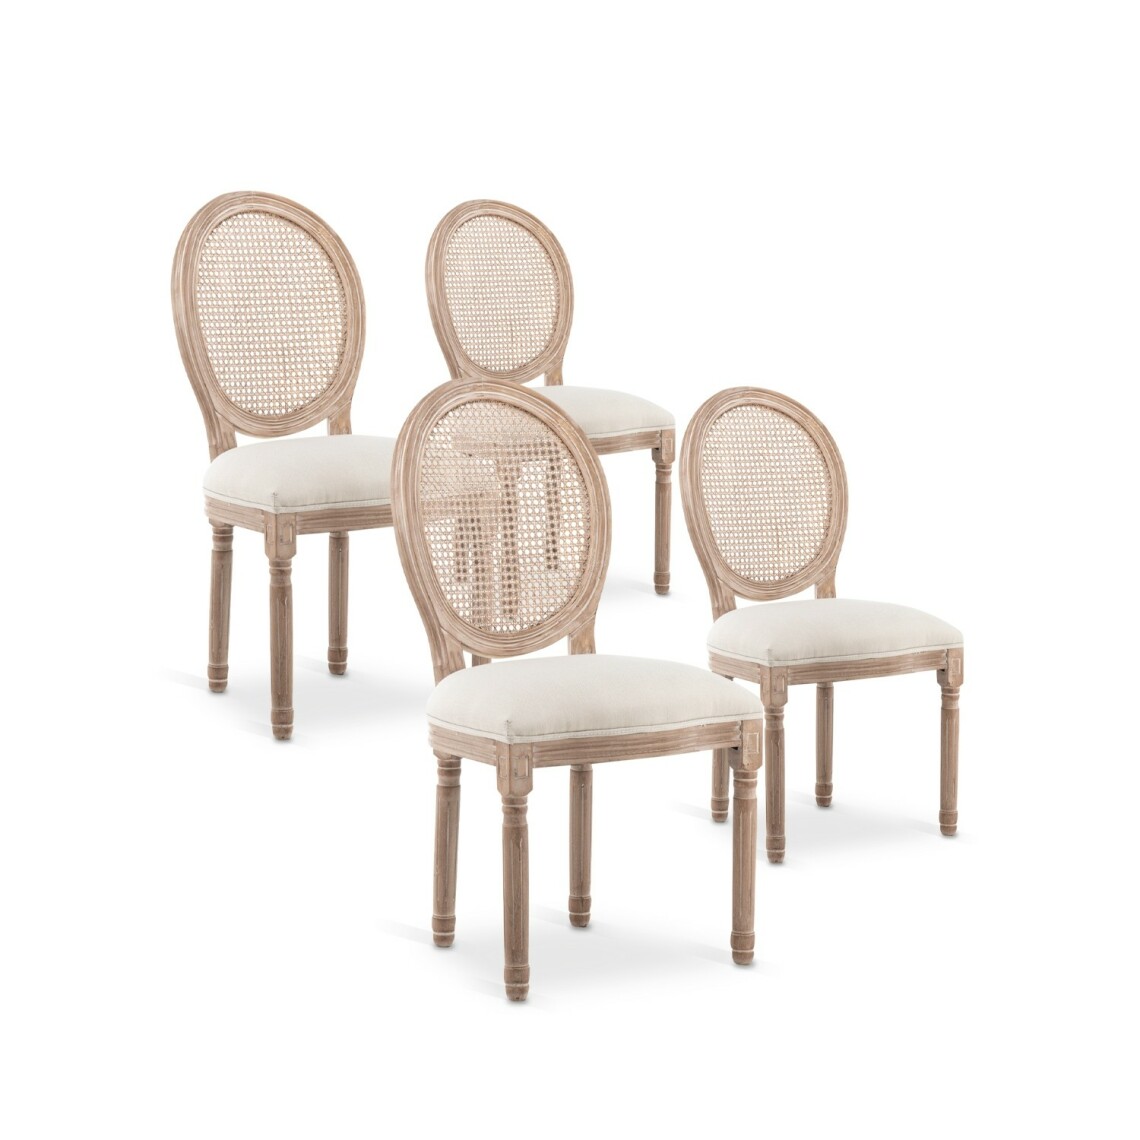 marque generique - Lot de 4 chaises médaillon Louis XVI Cannage Rotin tissu Beige - Chaises